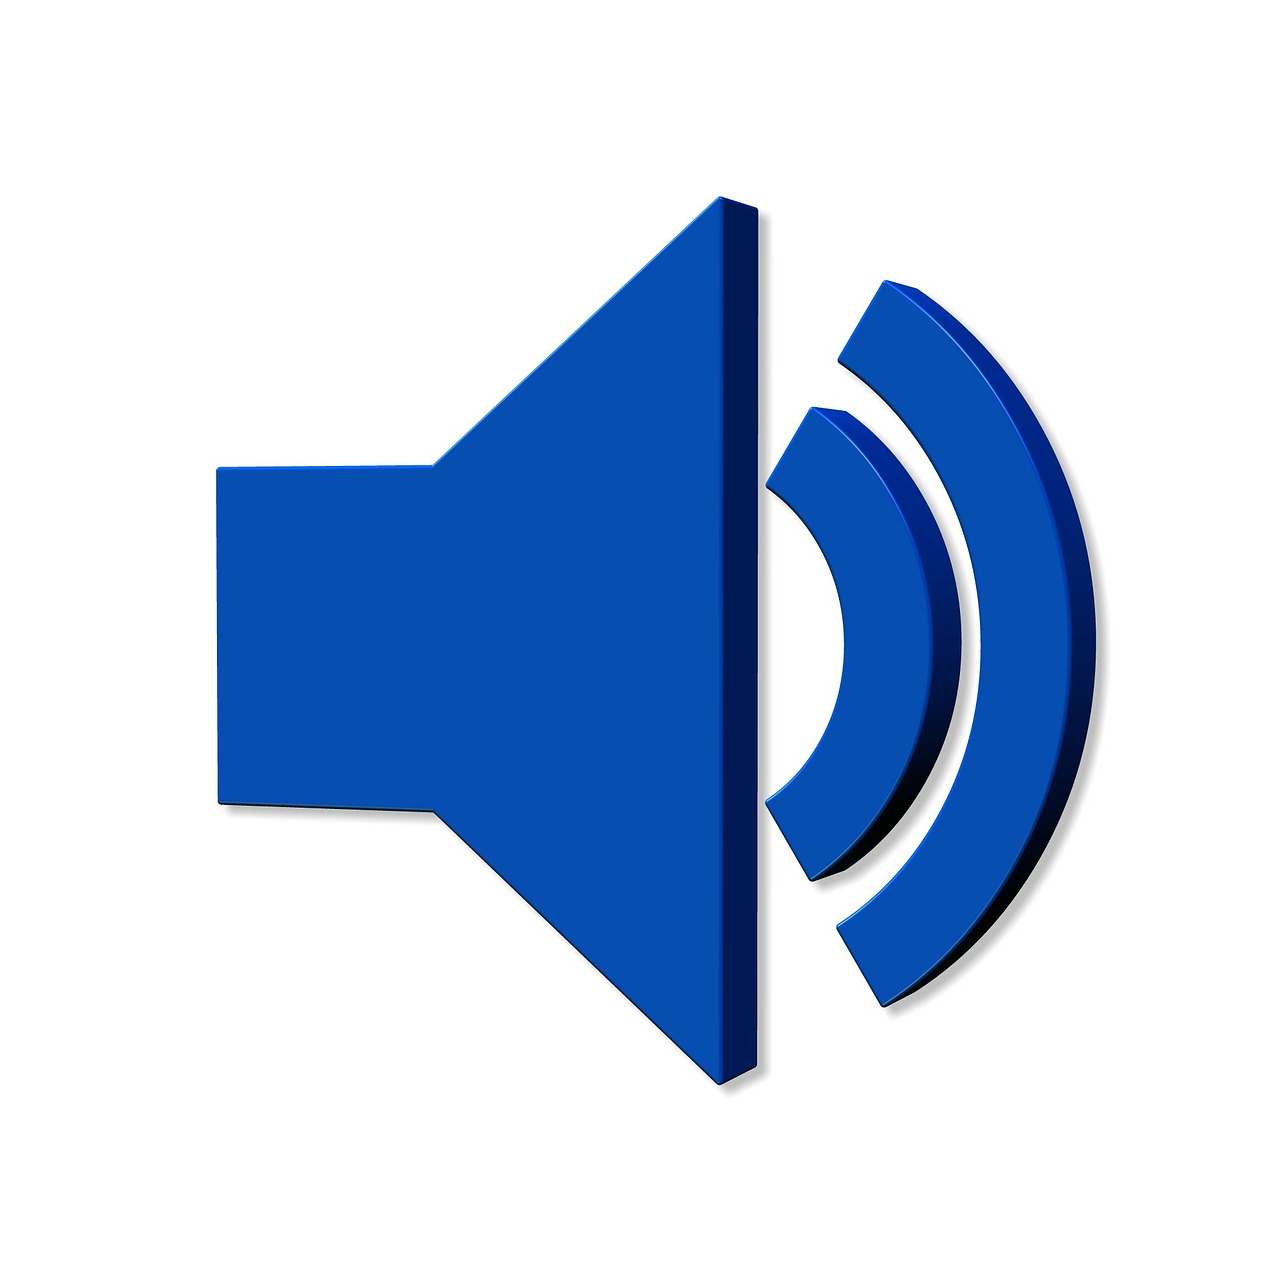 audio symbol in blue